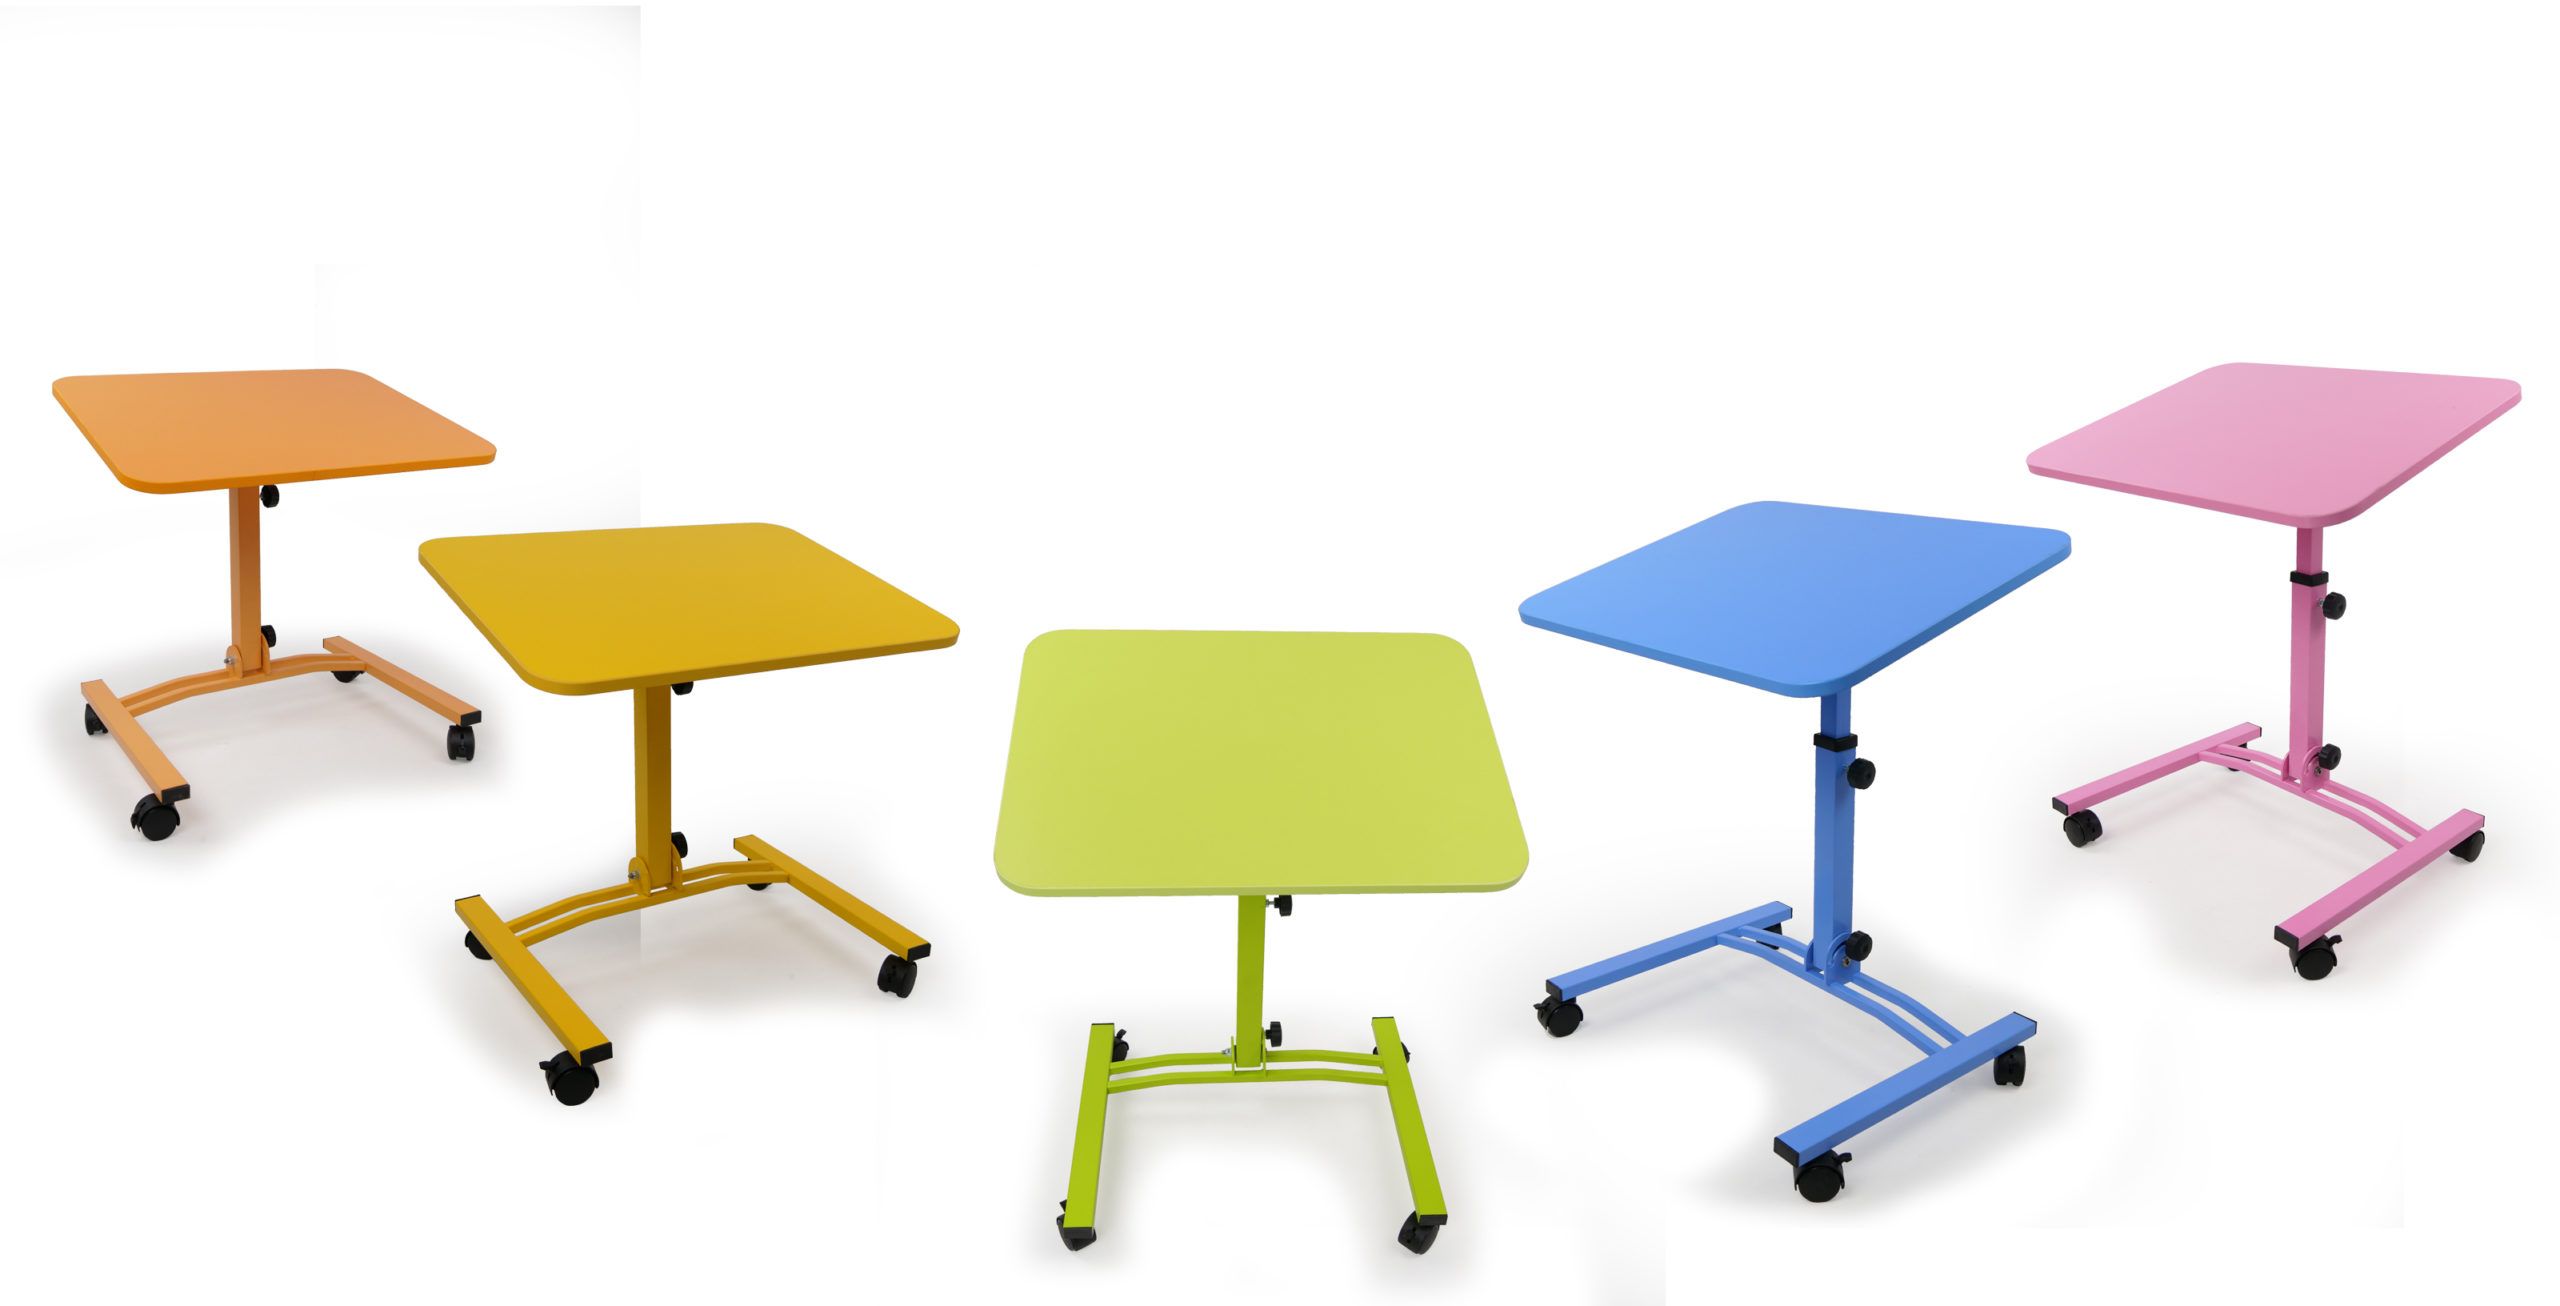 Компактный складной стол для ноутбука «Твист-2 цветная серия» на колесиках с регулировкой высоты и угла наклона